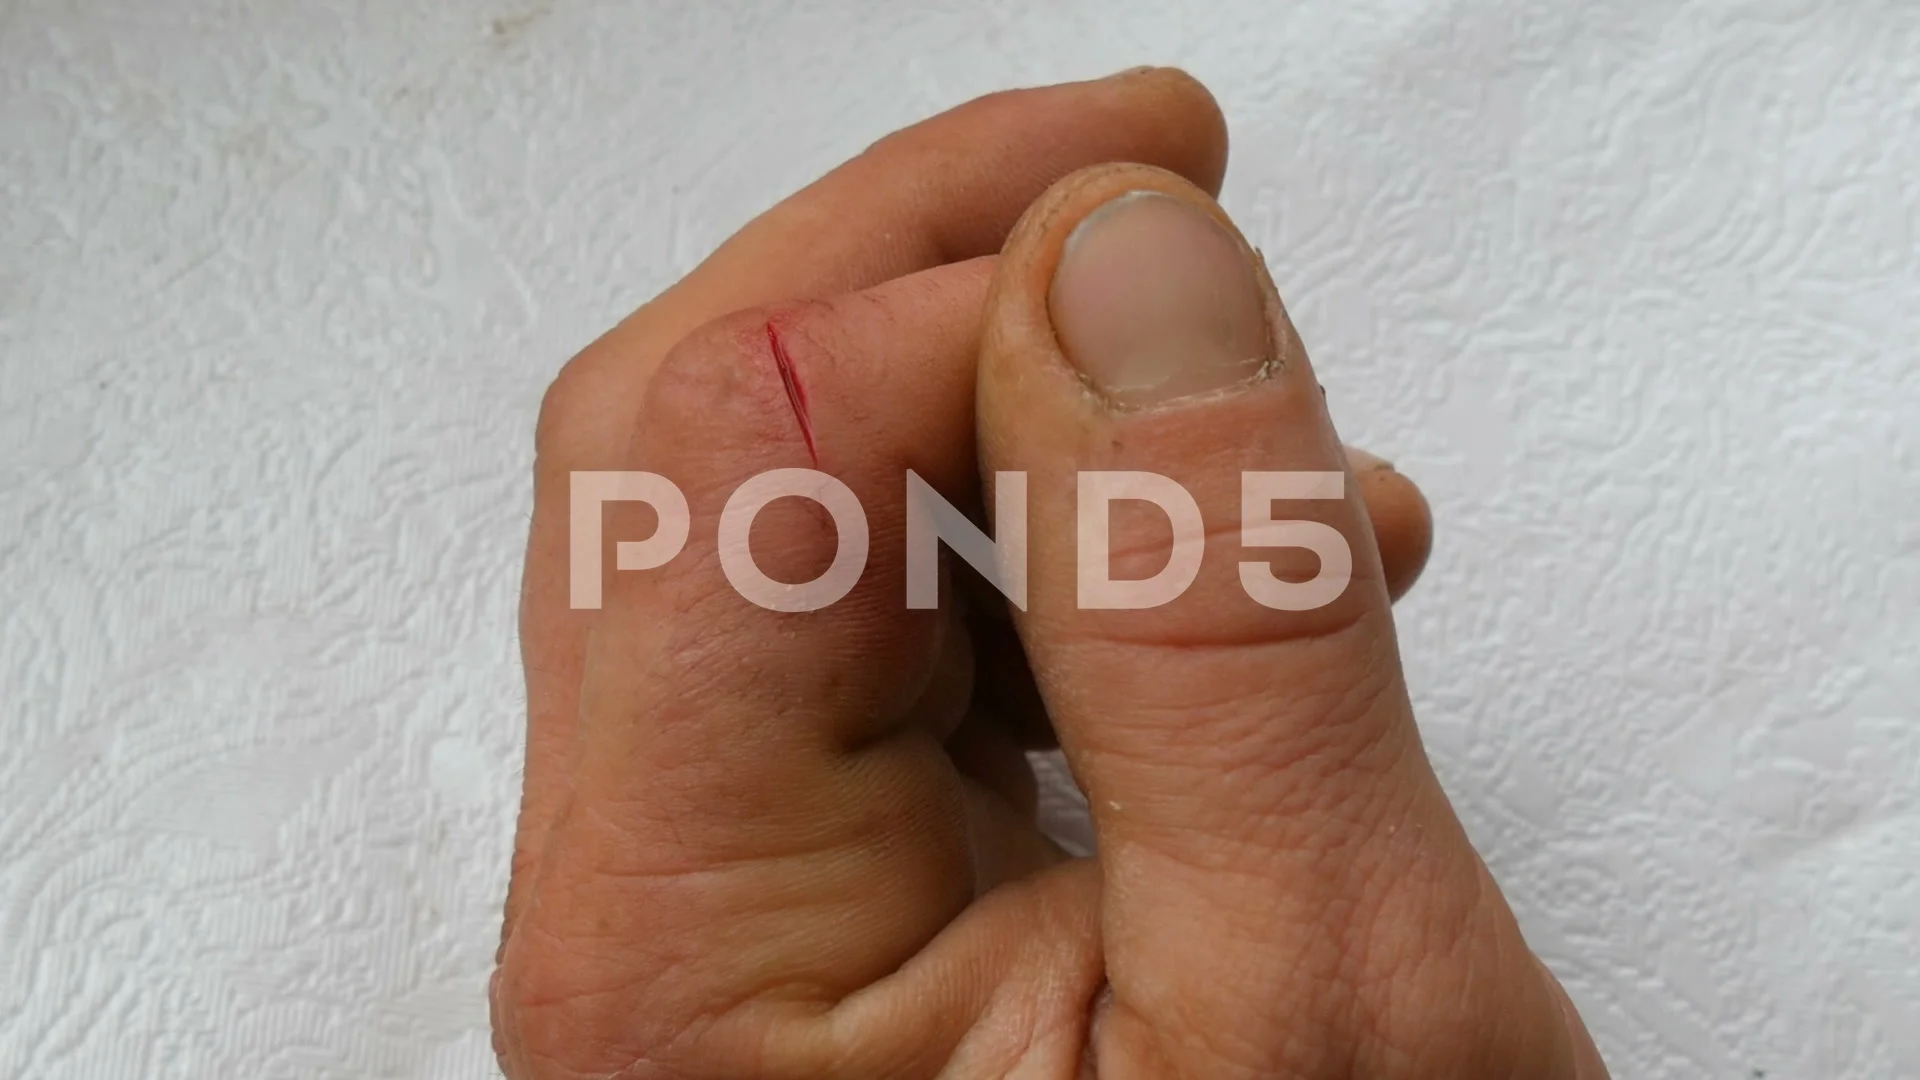 https://images.pond5.com/deep-cut-finger-men-blood-footage-105674454_prevstill.jpeg